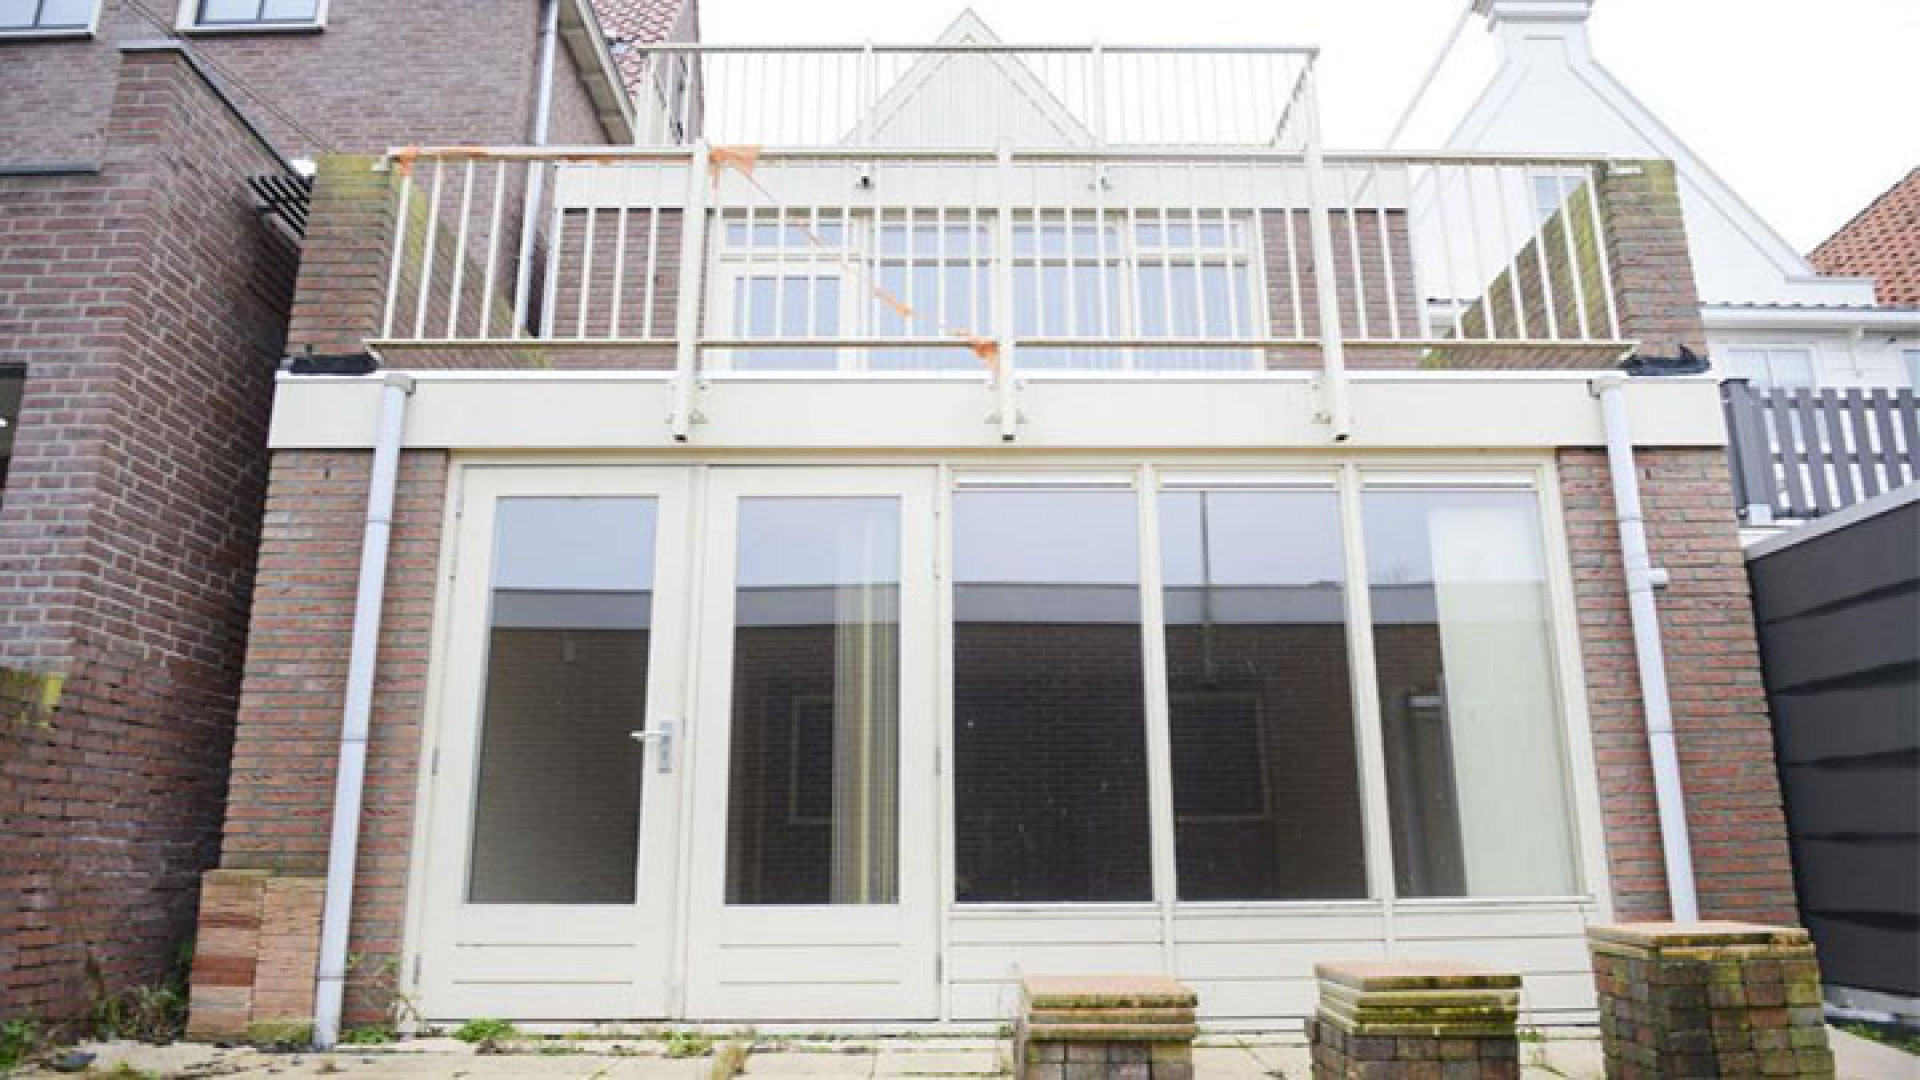 Huis Yolanthe in Volendam eindelijk verkocht. Zie foto's 20